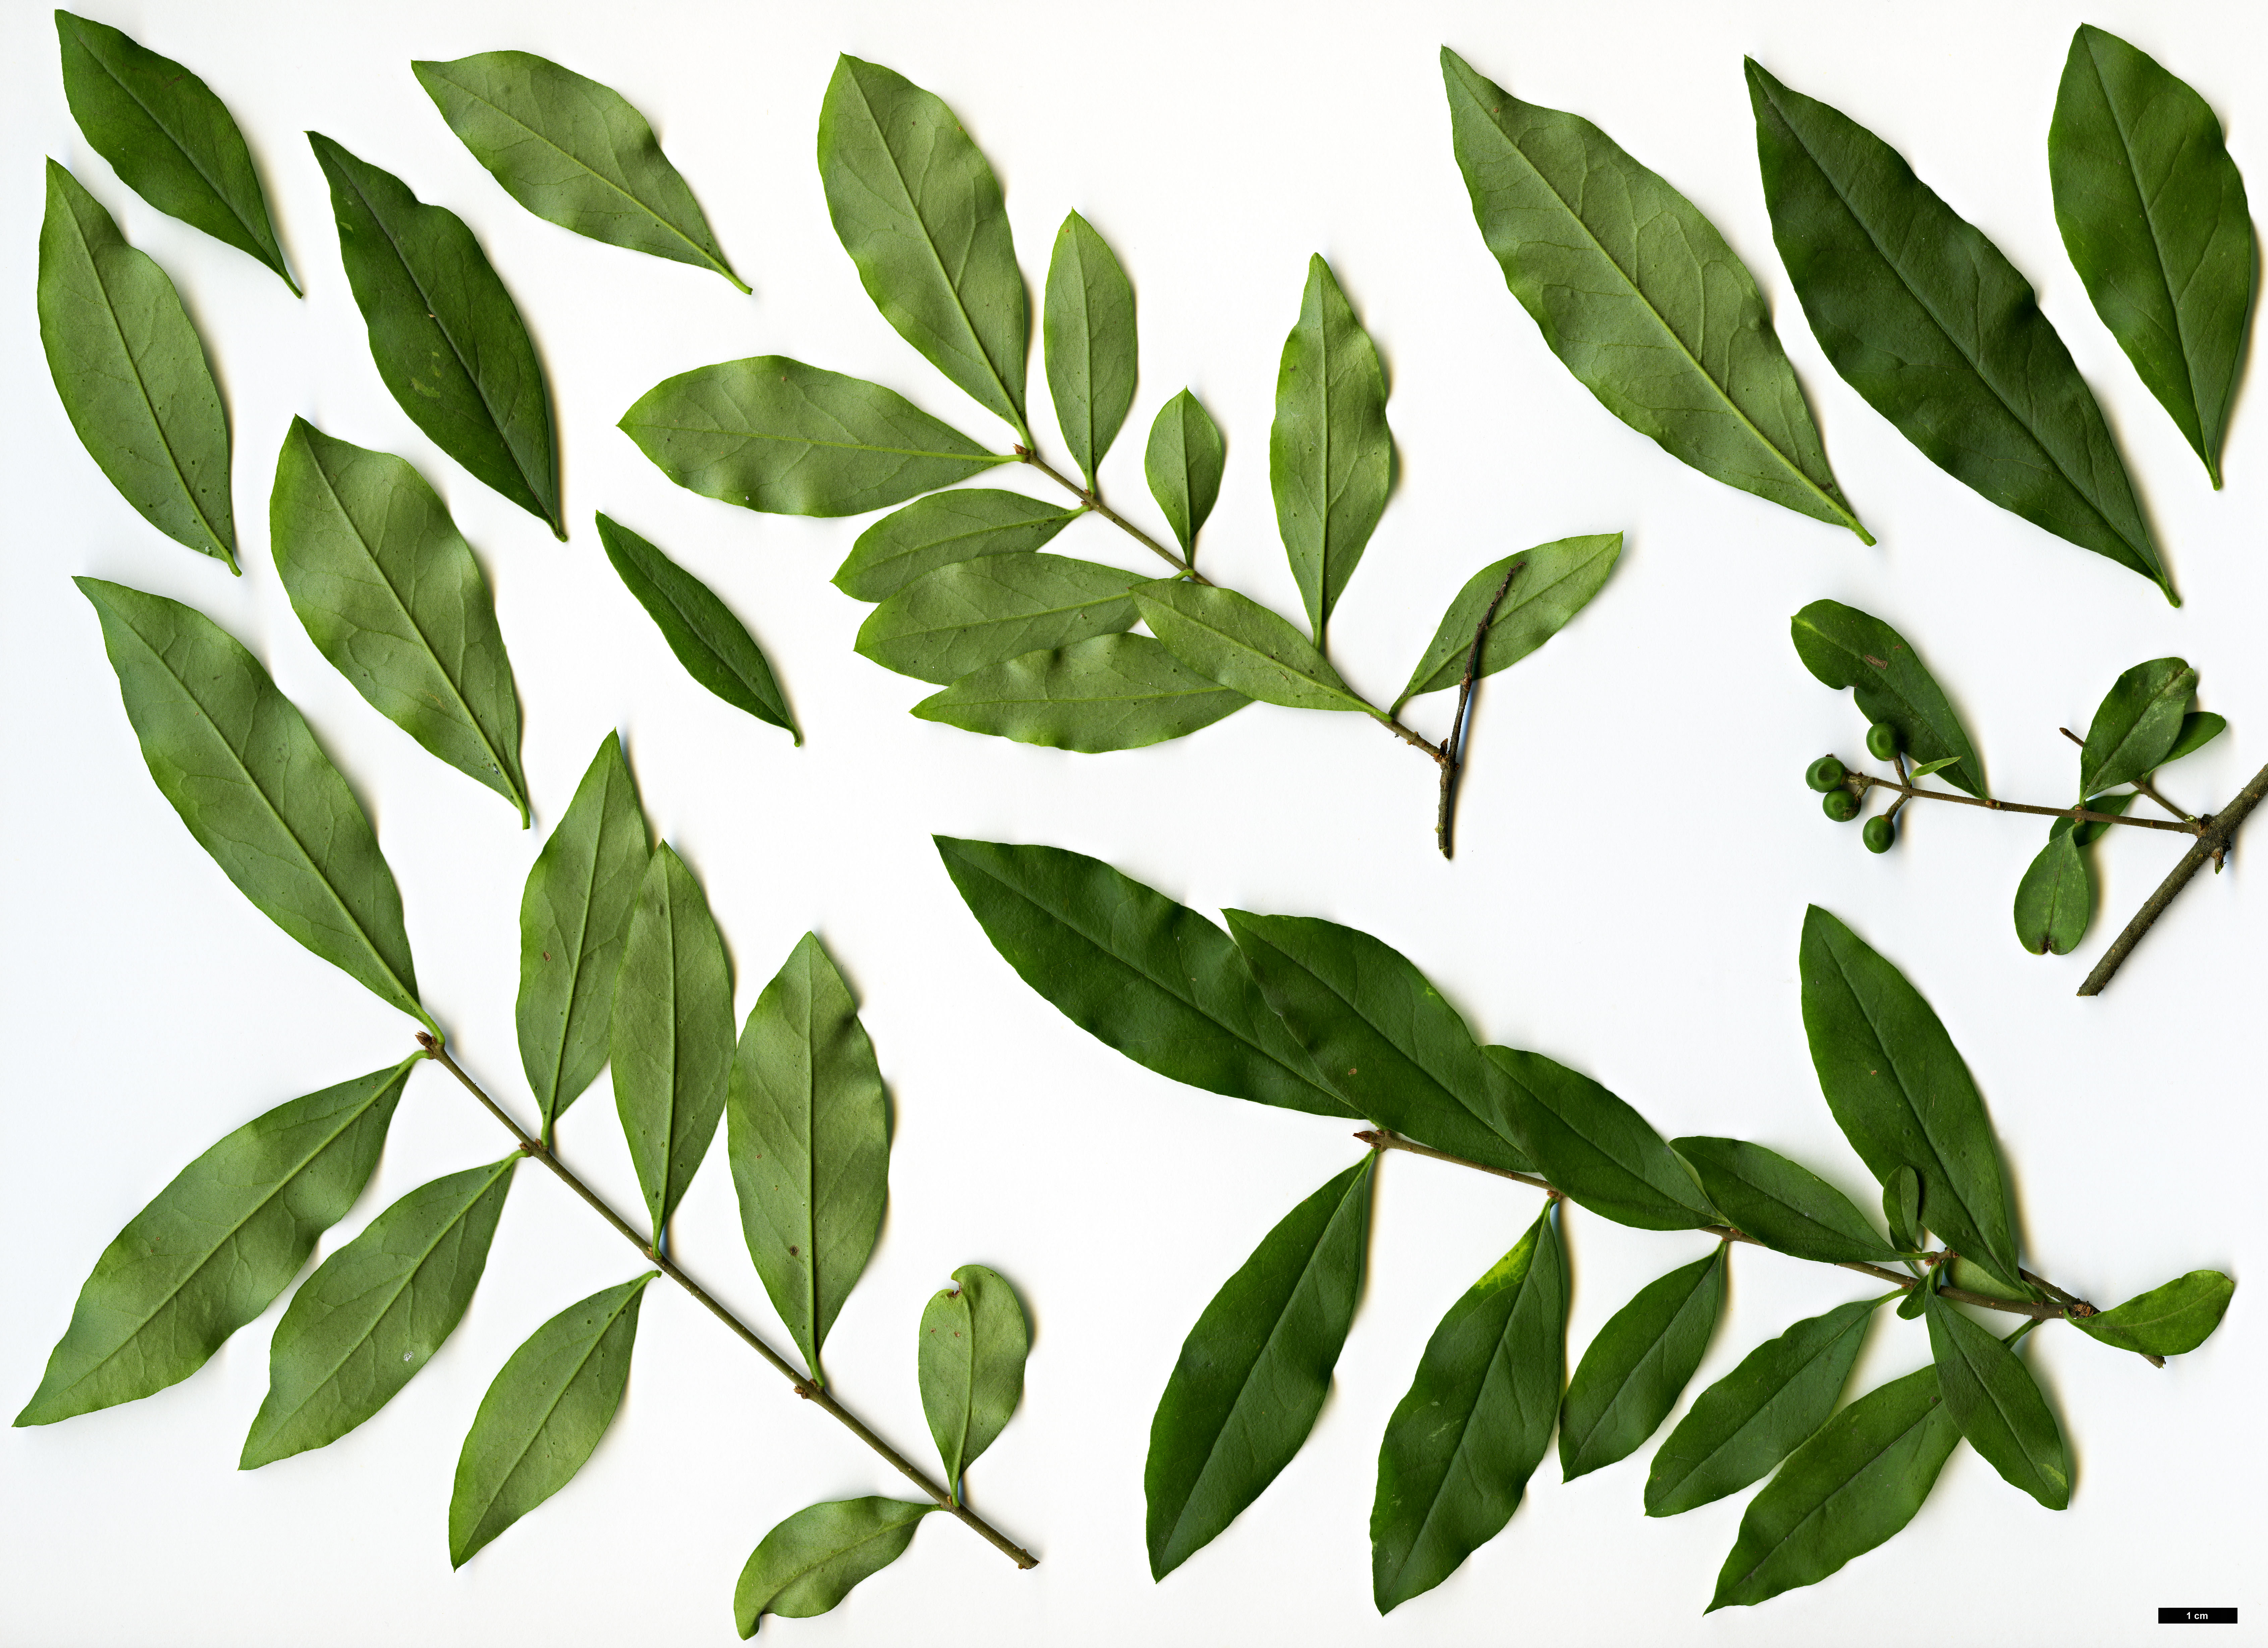 High resolution image: Family: Oleaceae - Genus: Ligustrum - Taxon: ibota